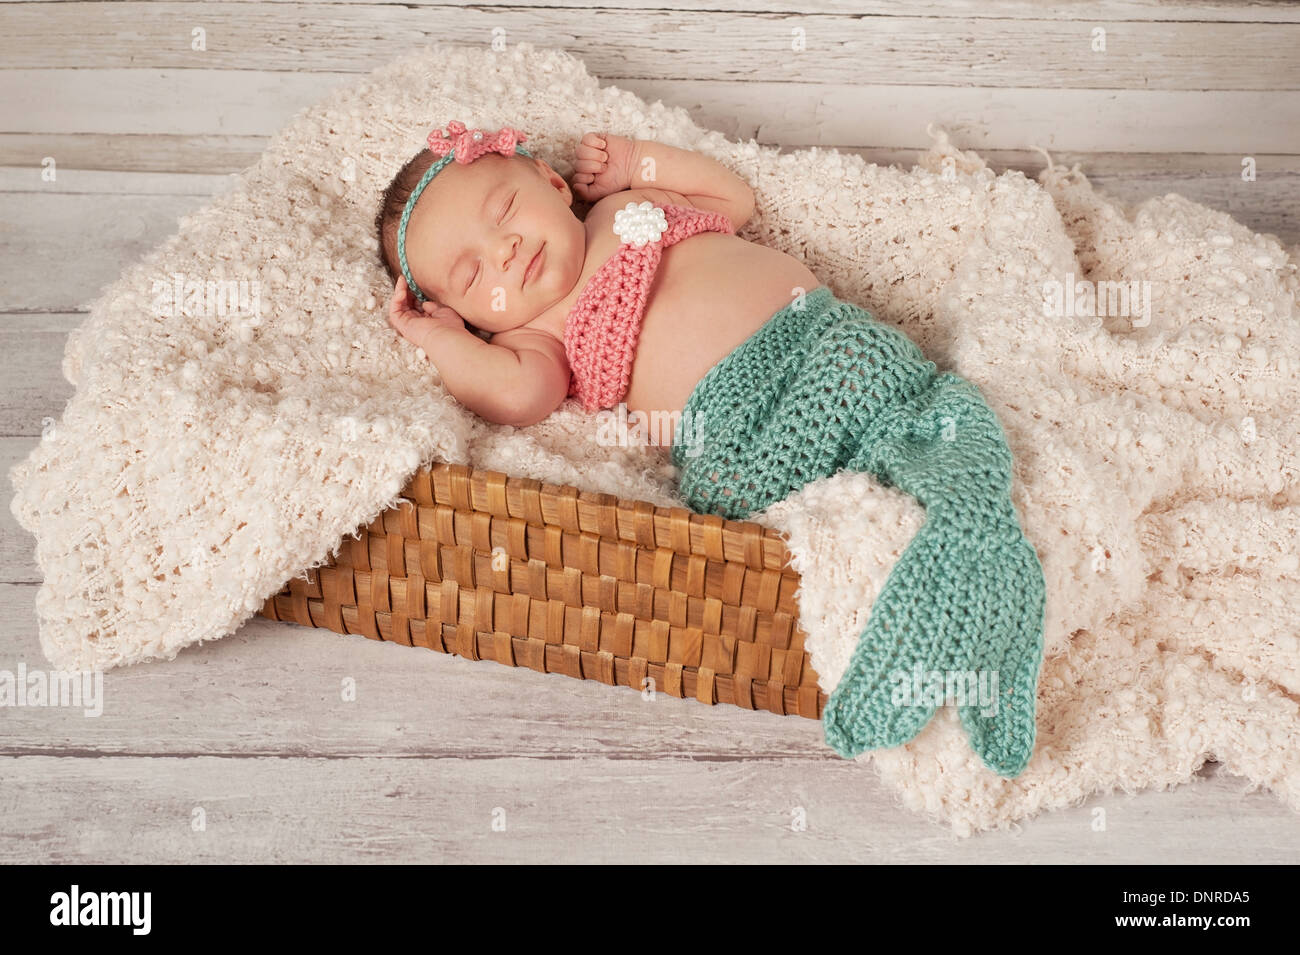 Sleeping Newborn Baby Girl Wearing a Mermaid Costume Stock Photo